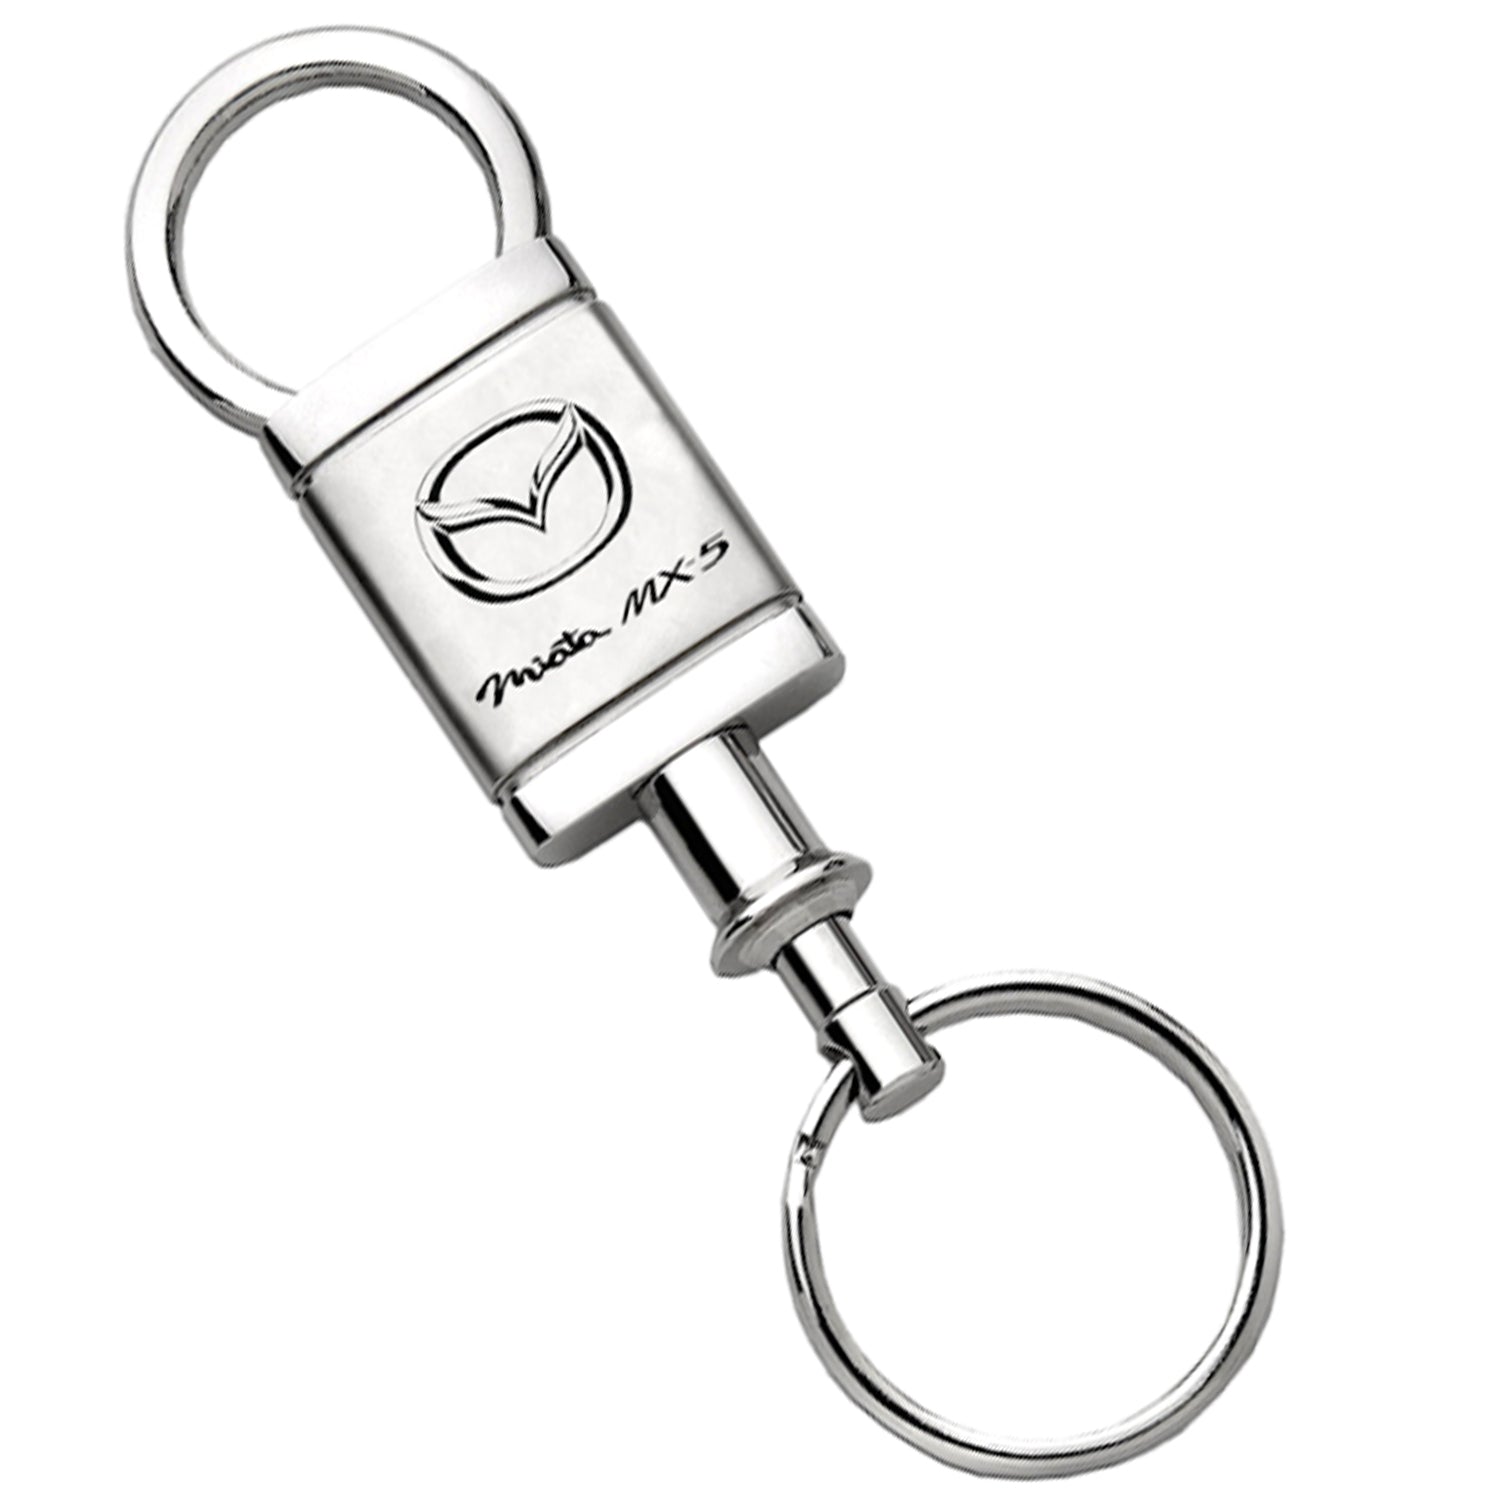 Mazda,M5,Key Chain